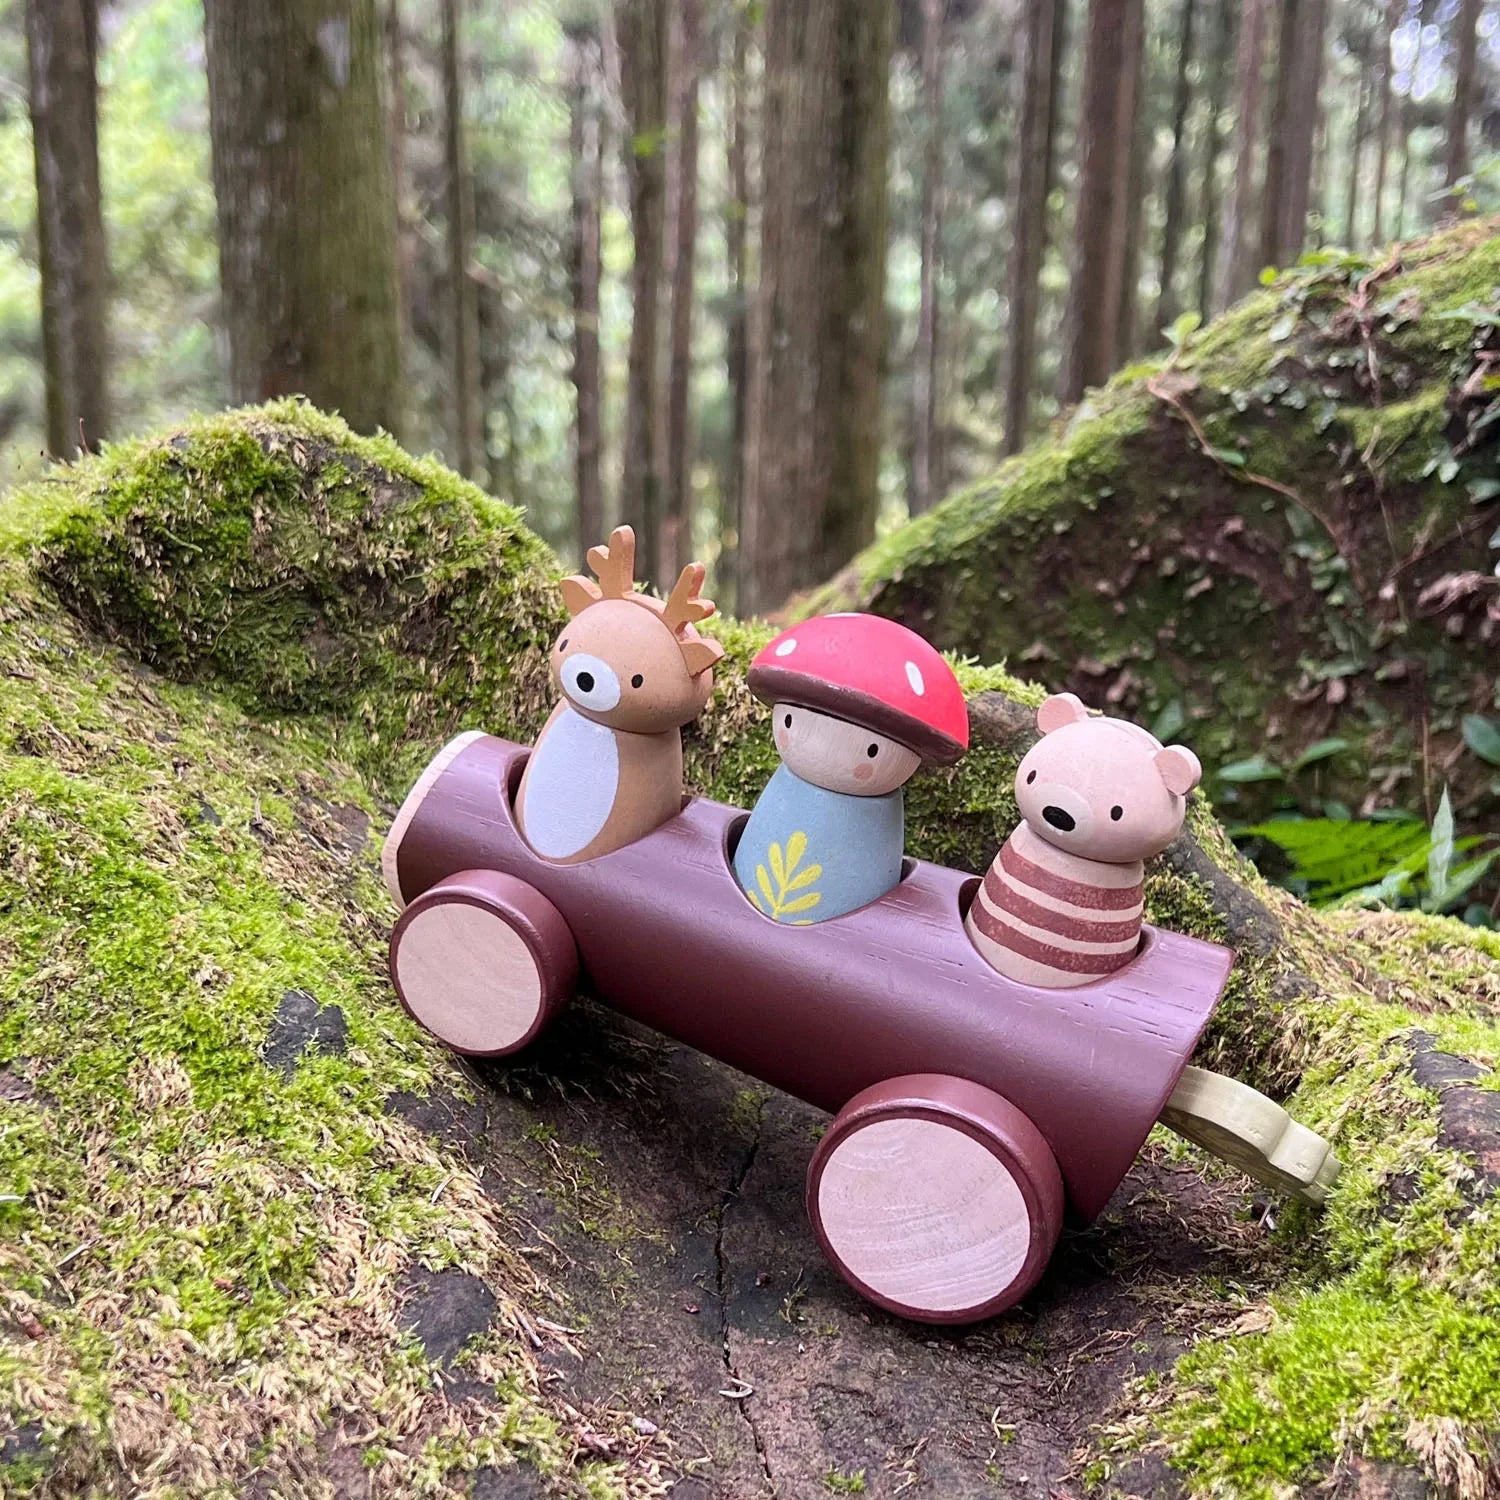 Brinquedos folhosos de folhas: cabine florestal de madeira com figuras táxi de madeira